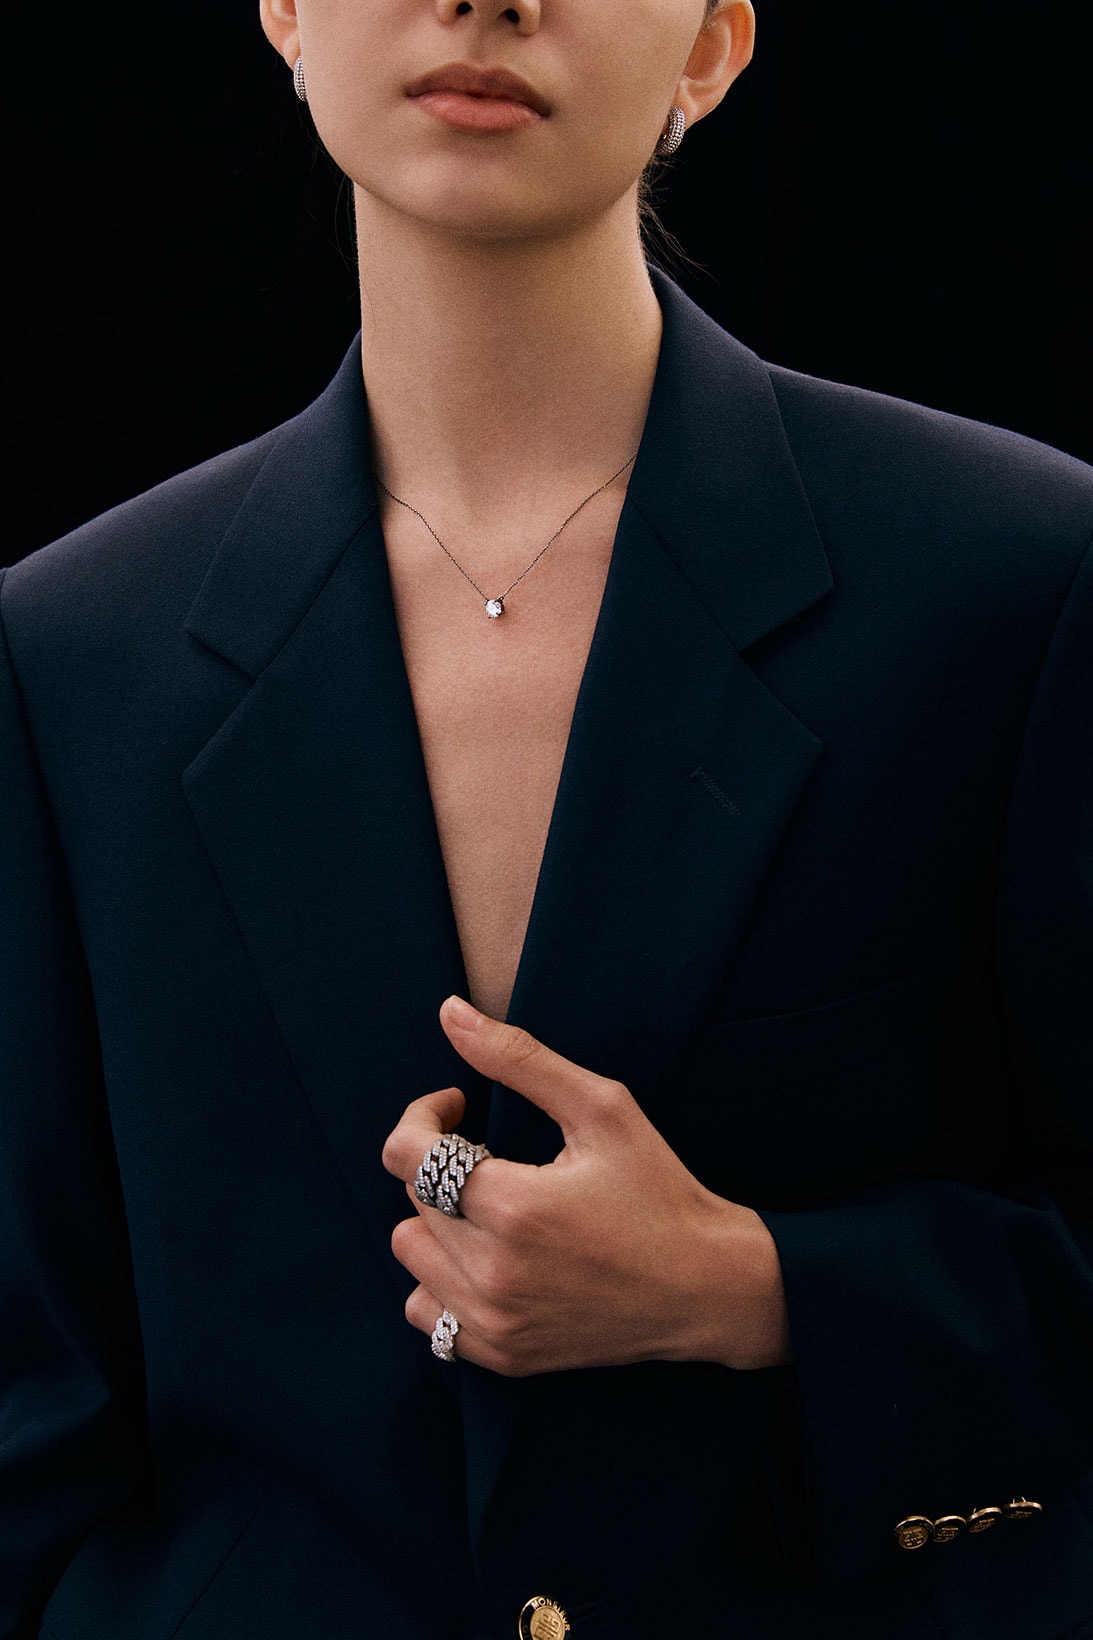 numbering jewelry black blazer suit jacket rings